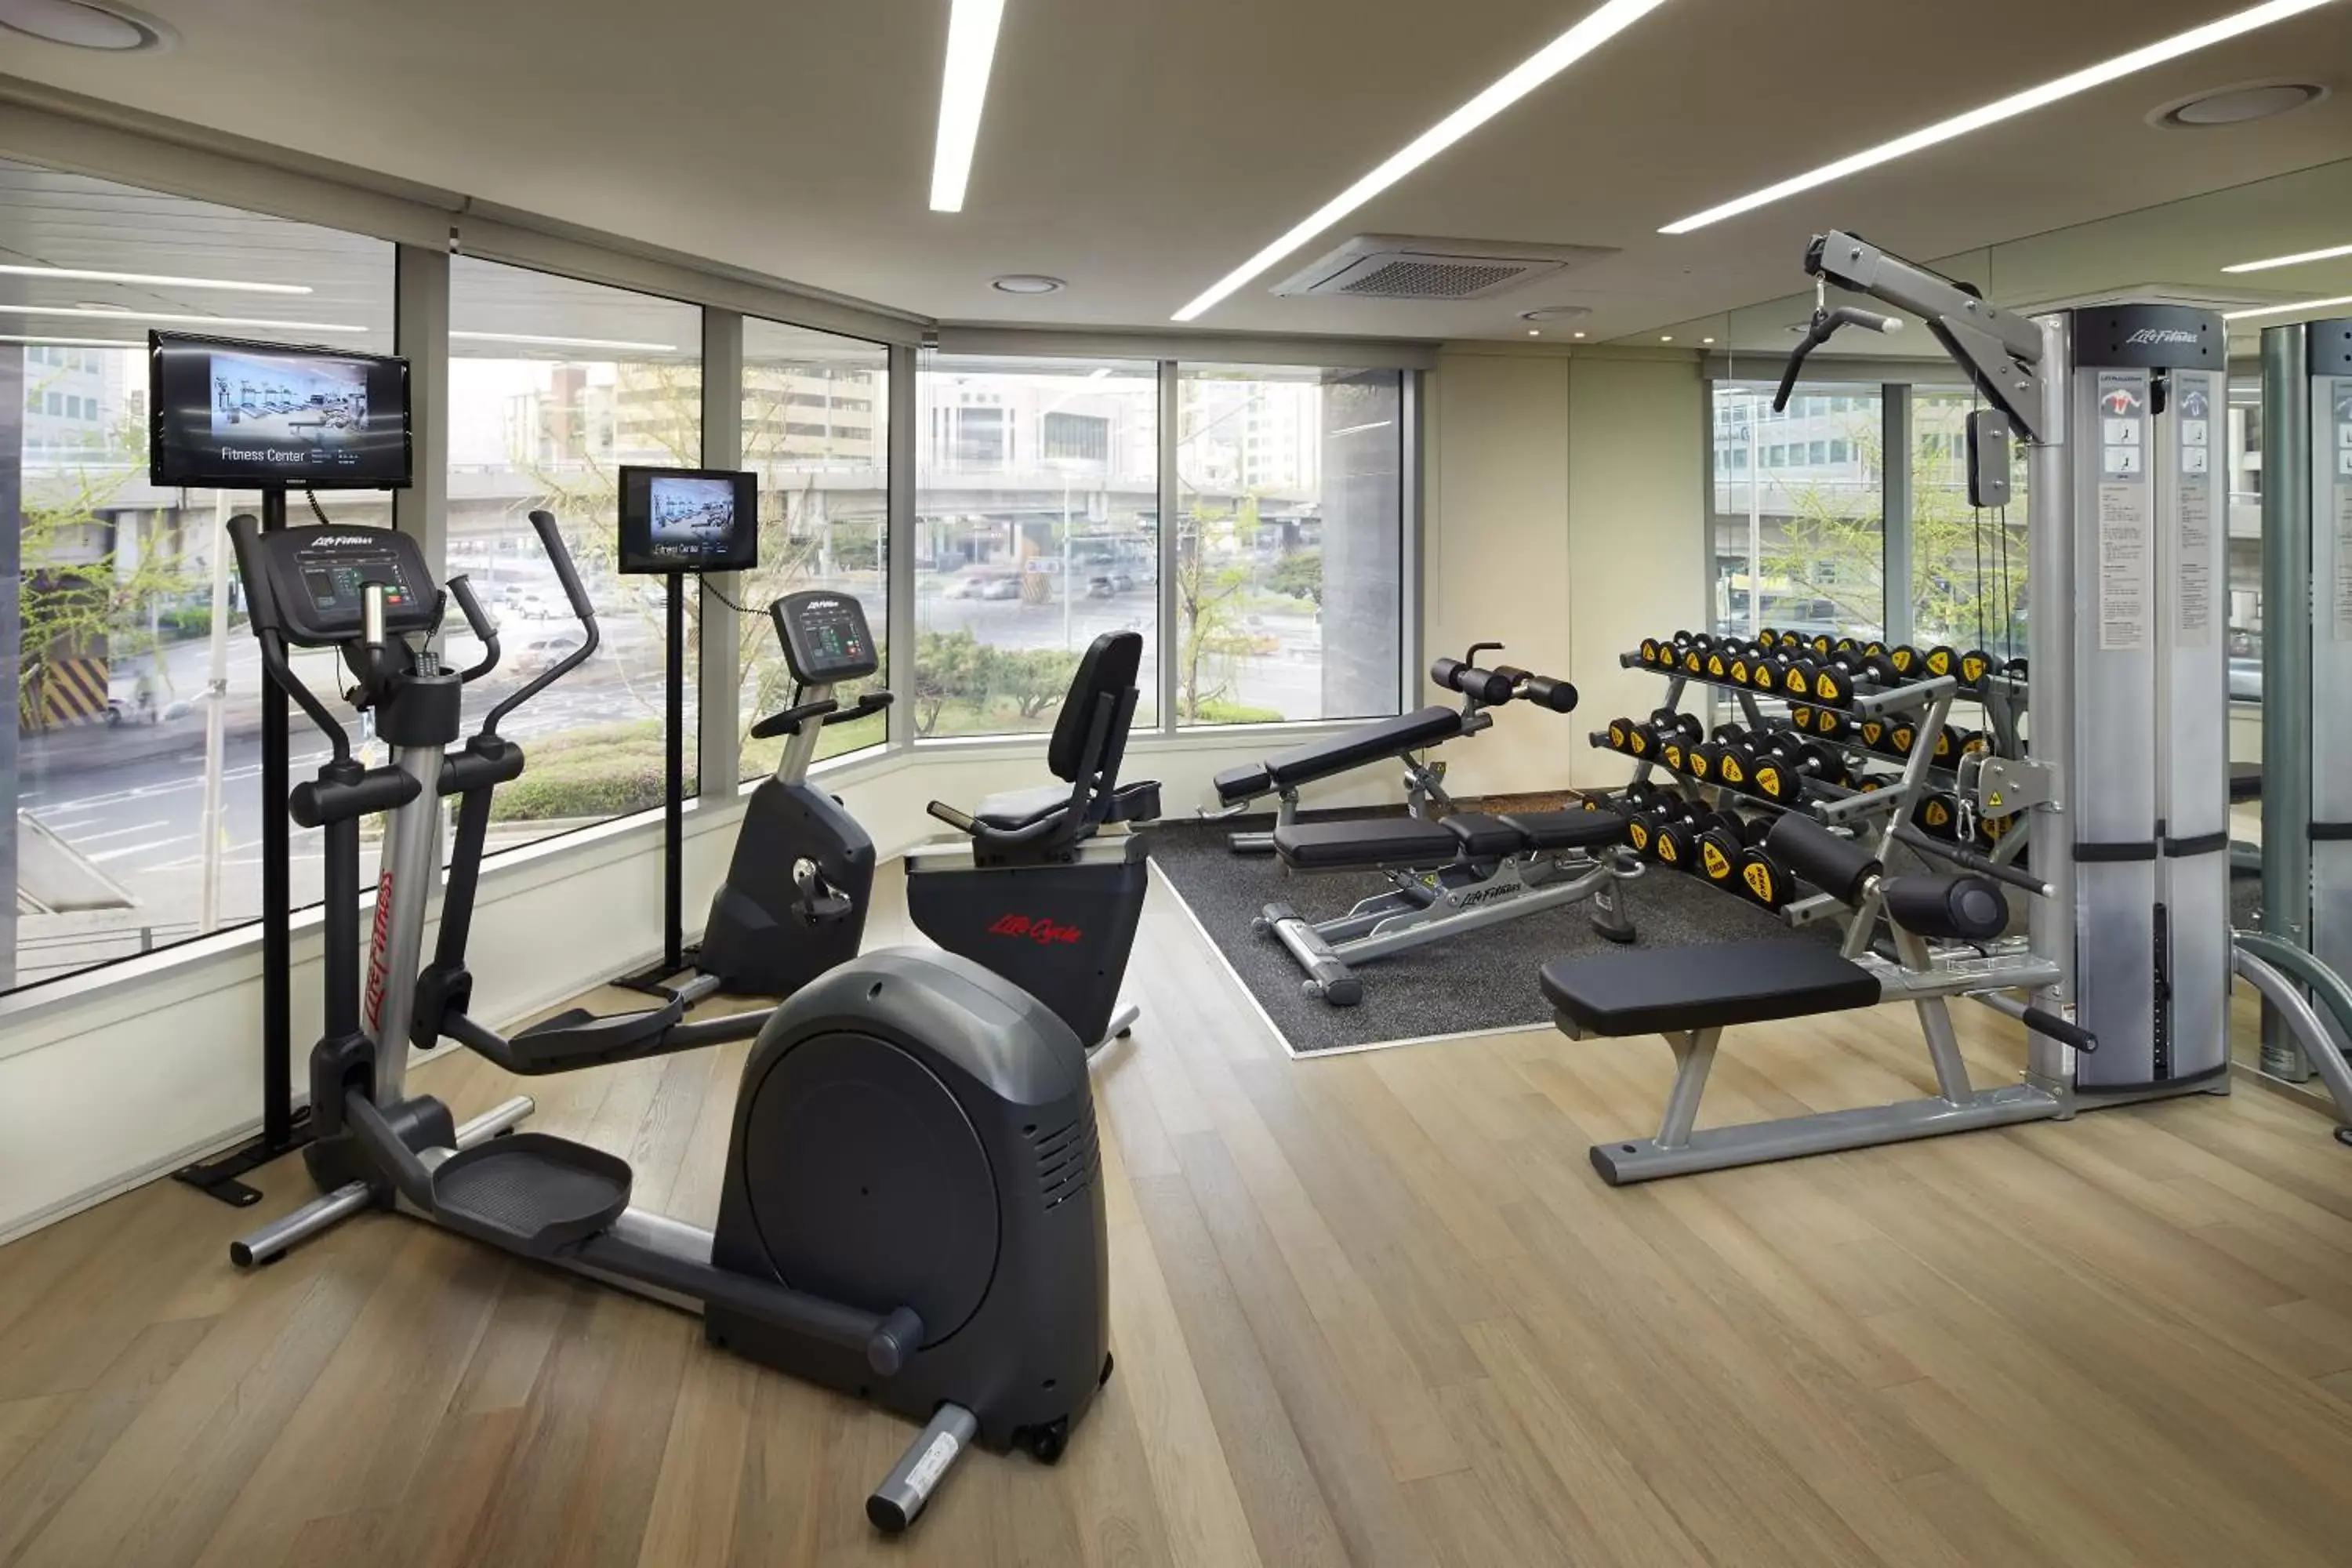 Fitness centre/facilities, Fitness Center/Facilities in Shilla Stay Guro